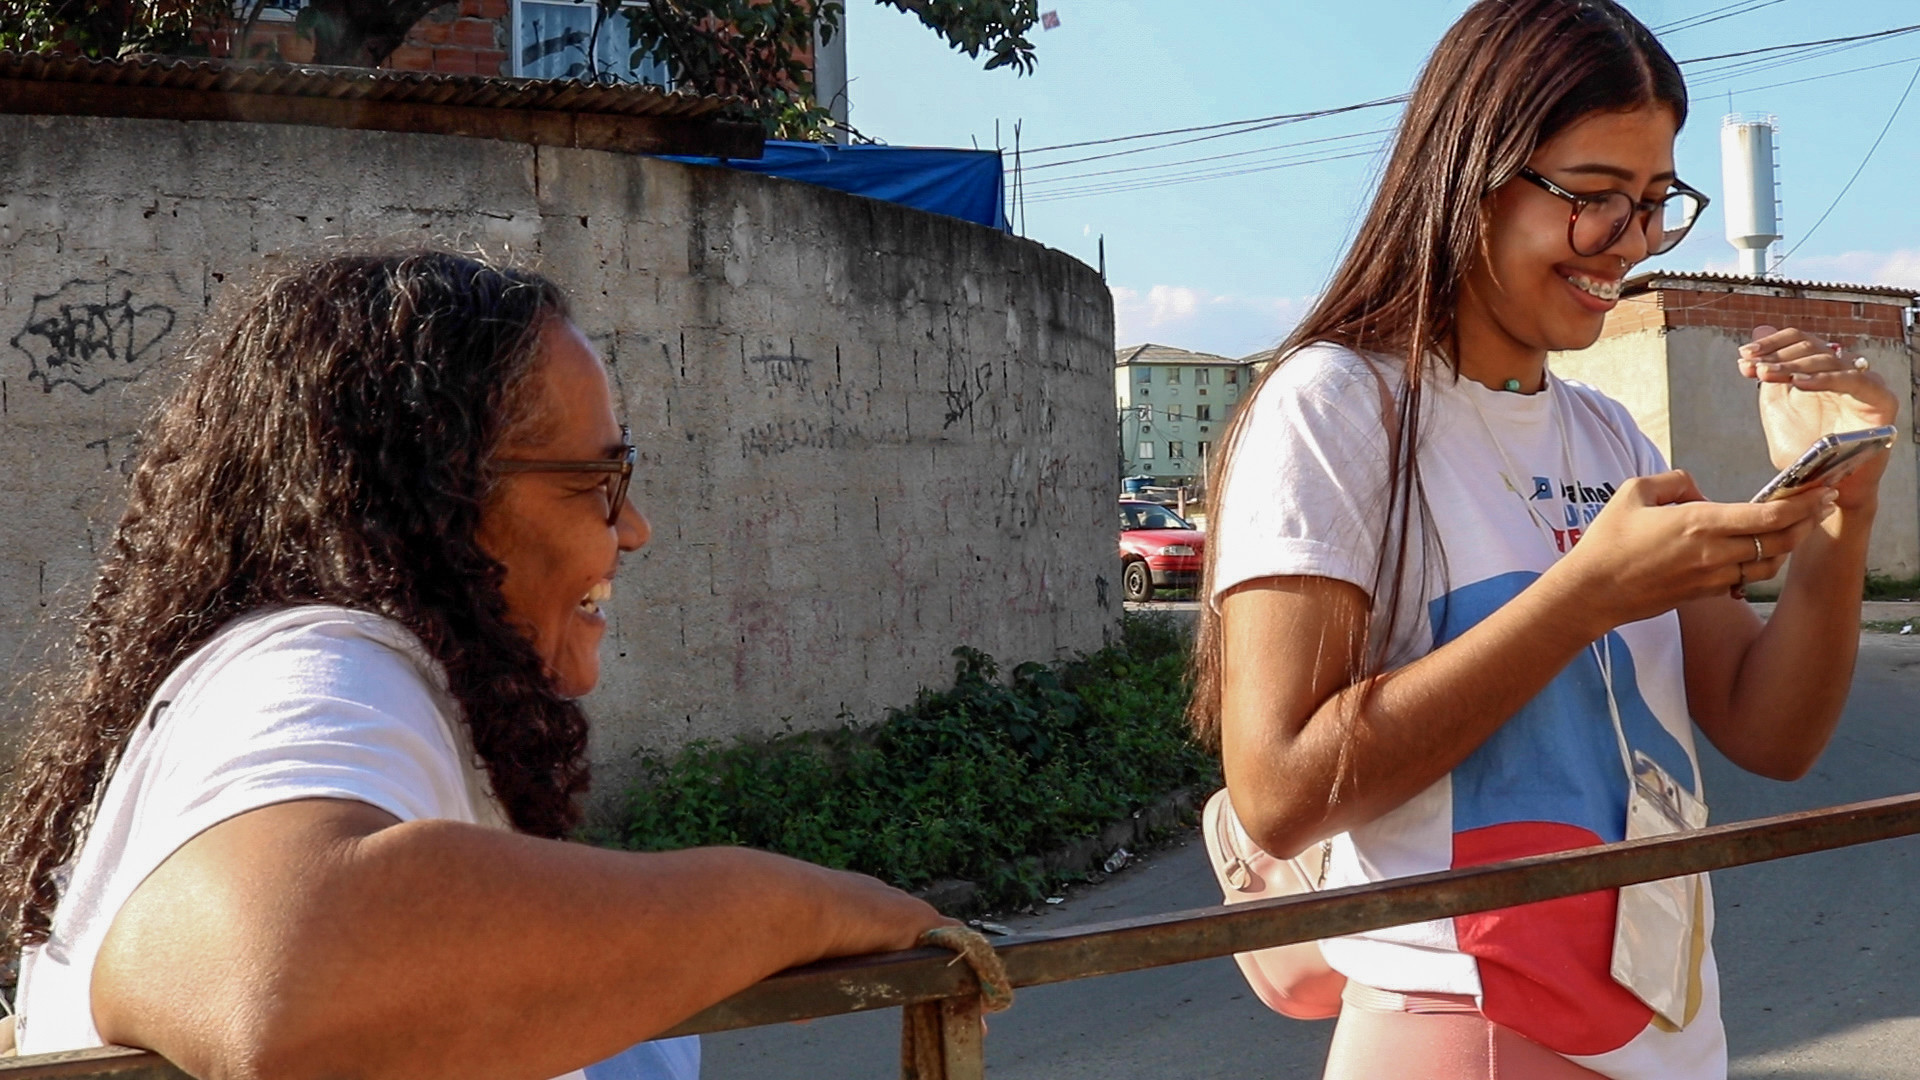 Fase de levantamento de dados, duas participantes do curso fazendo as entrevistas/ pesquisas com as pessoas nas ruas da Cidade de Deus. Foto: Luiza de Andrade